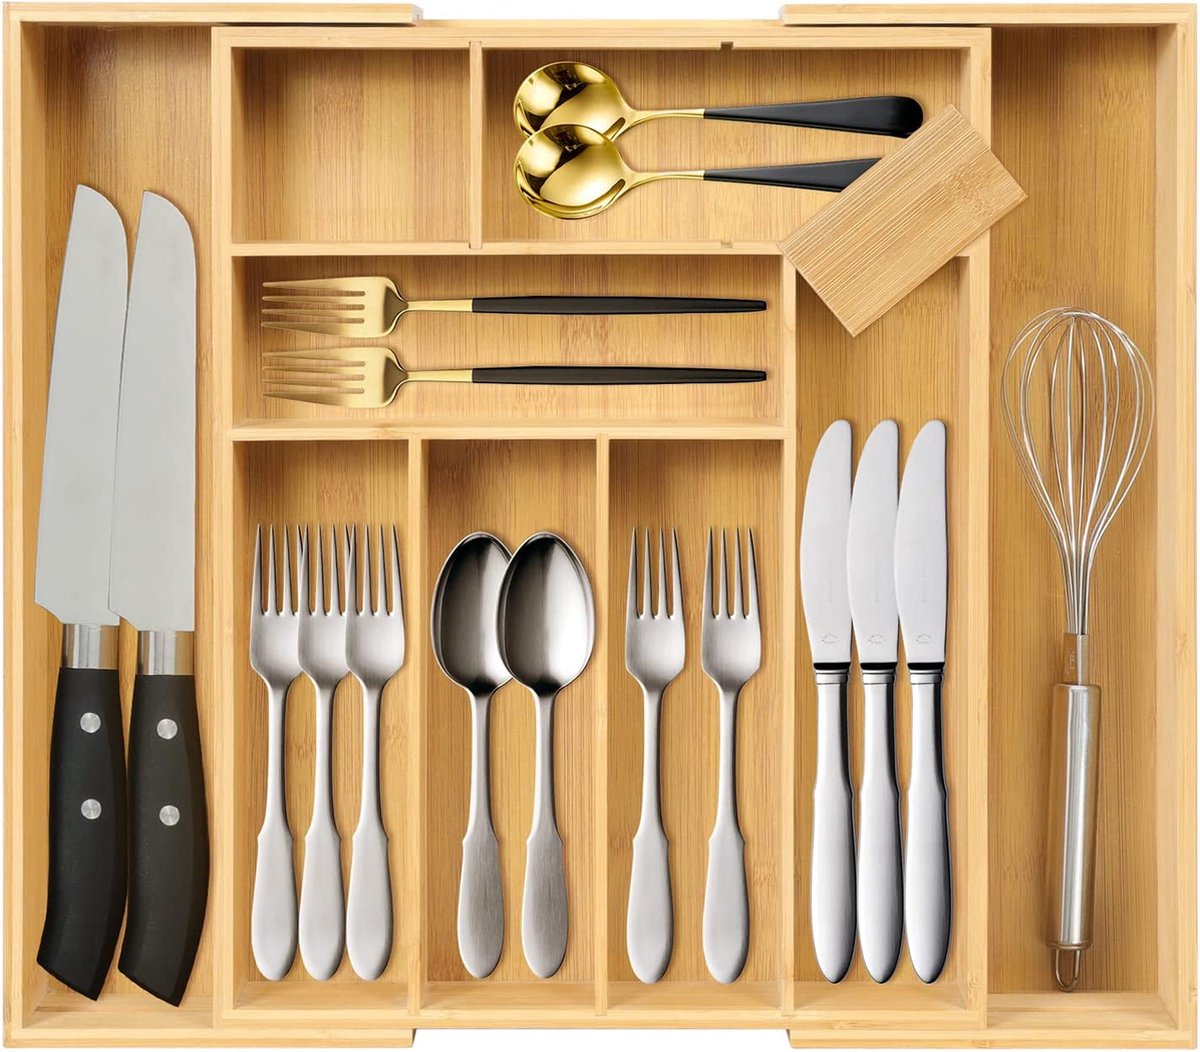 Bestekbak – luxe bestekcasette – bestek opslag voor laden – opbergen van bestek – cutlery organizer